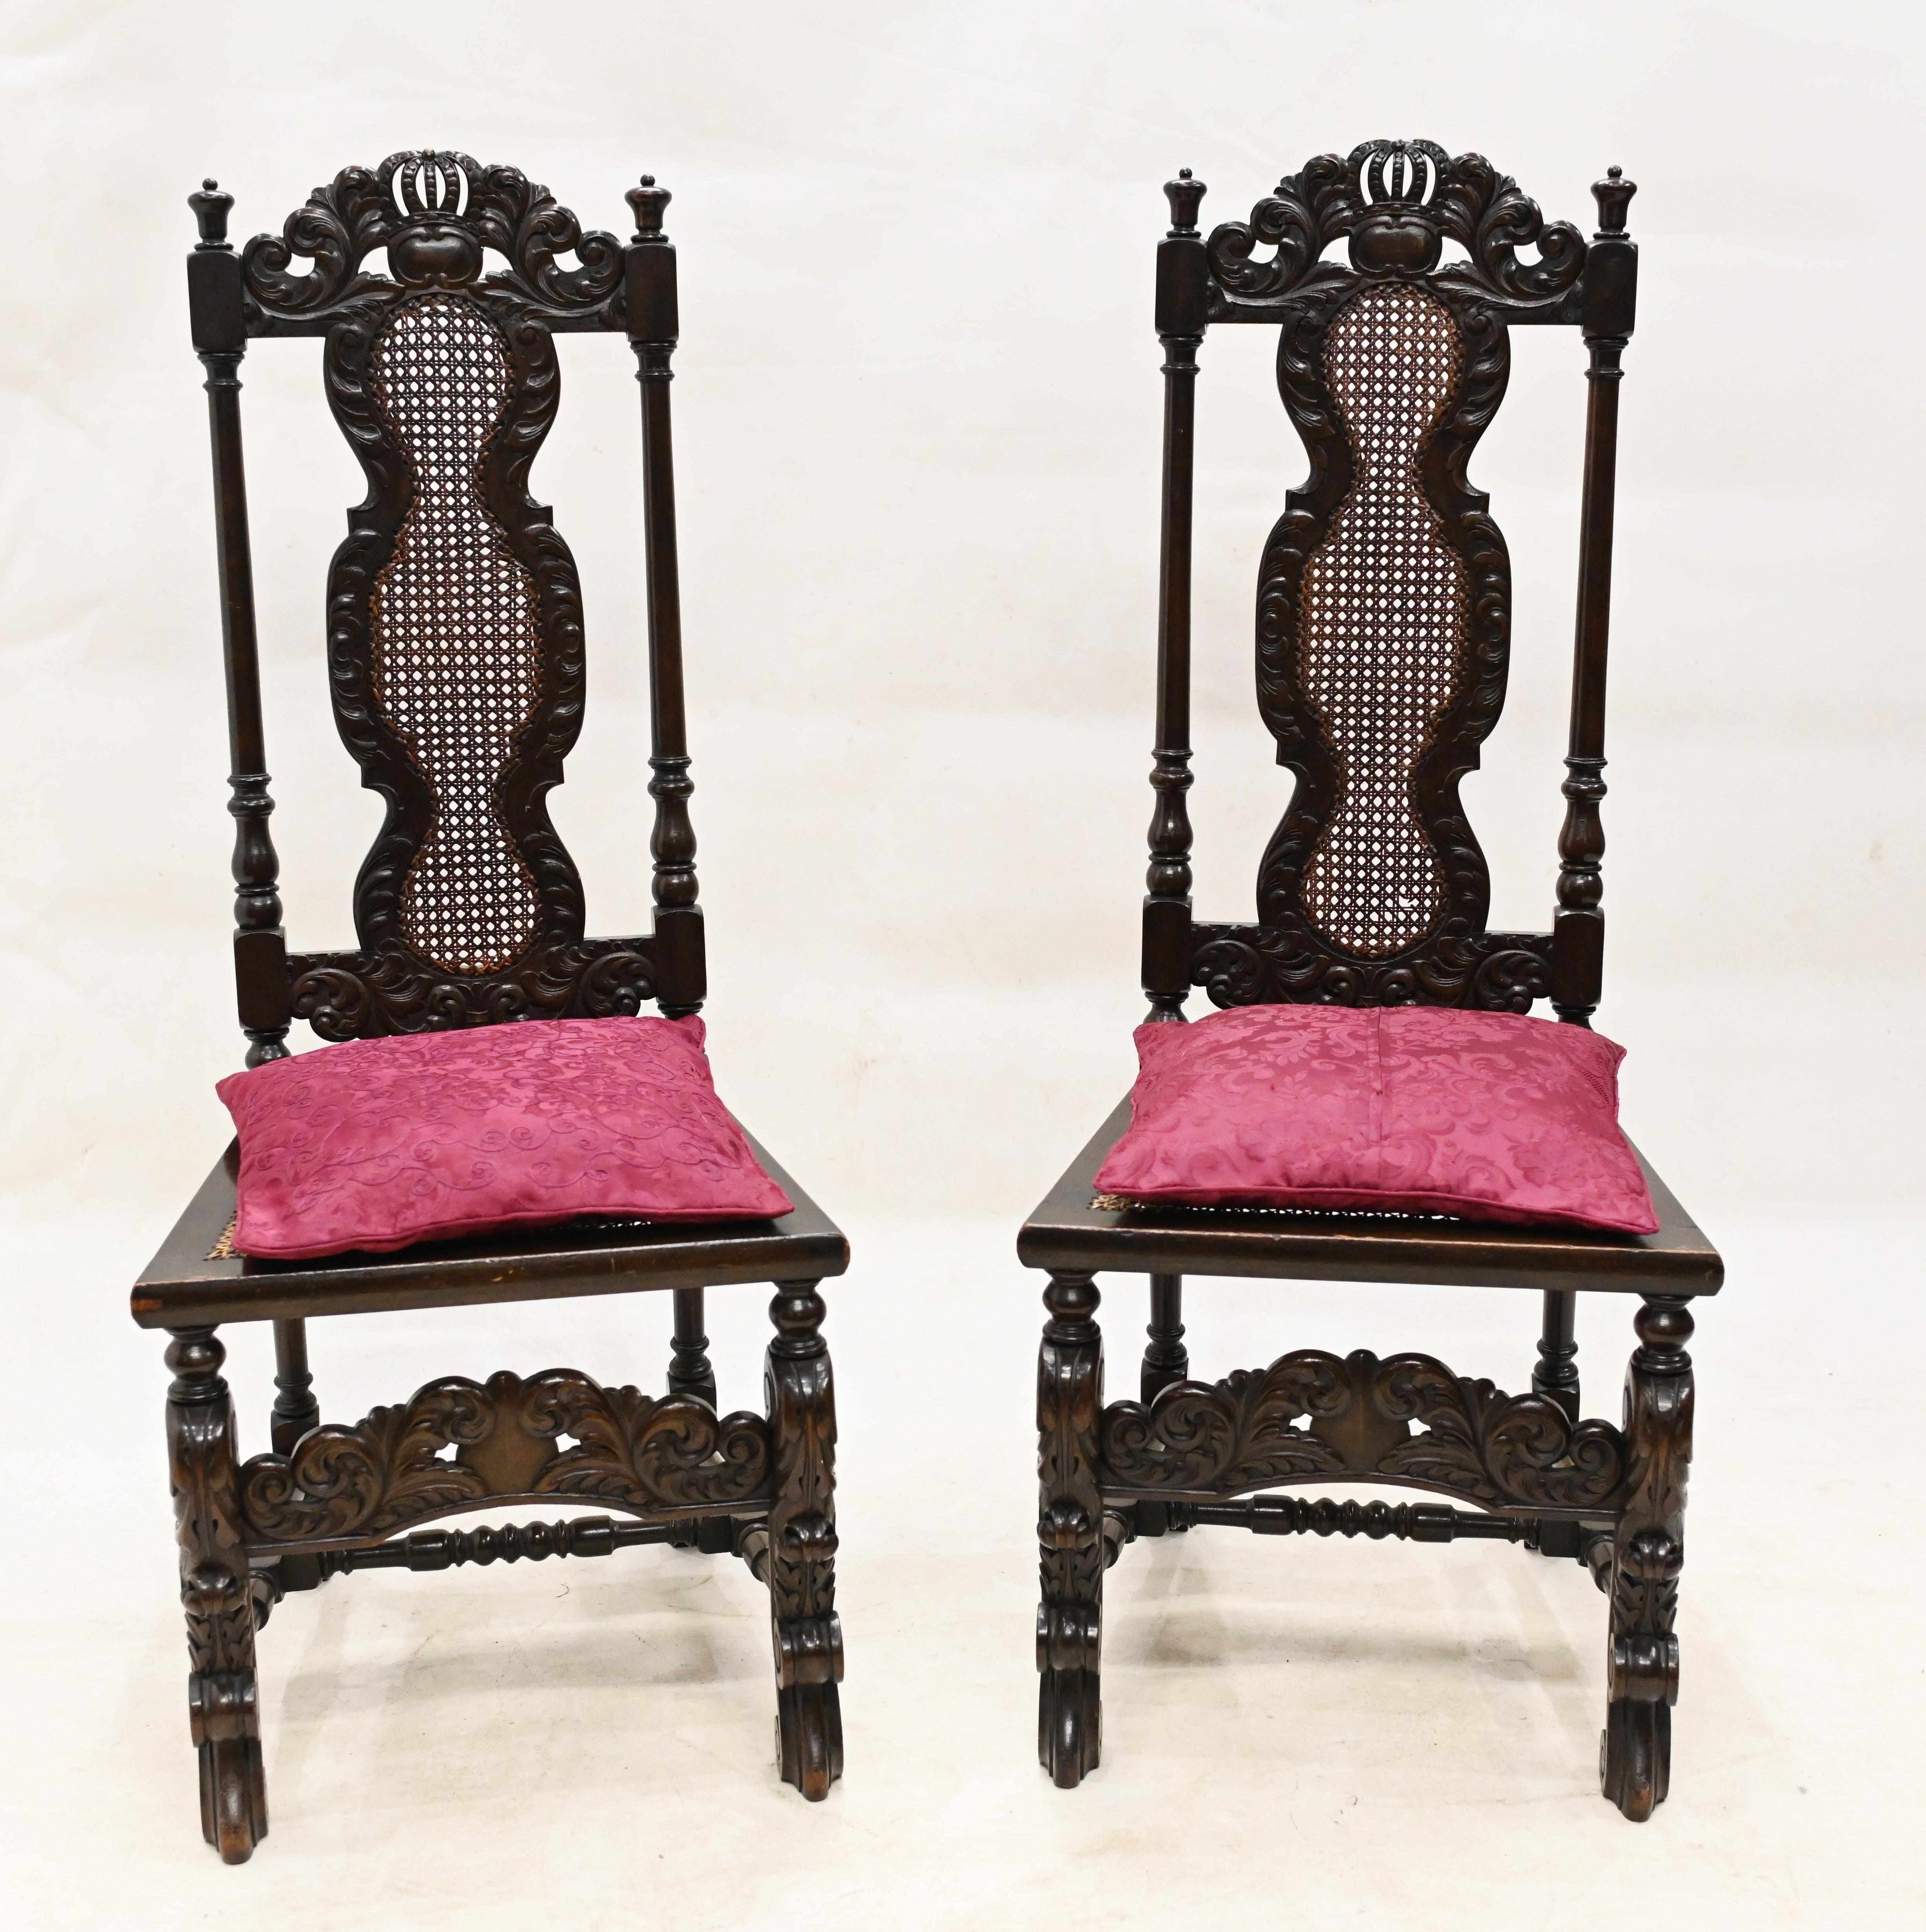 Paire de chaises antiques à la manière de Carole, très tendance
Nous datons cette paire d'environ 1880 et ils ont un superbe aspect de maison de ferme.
Sièges en raphia 
Les détails sculptés à la main sont très complexes et ornés.
Acheté dans une